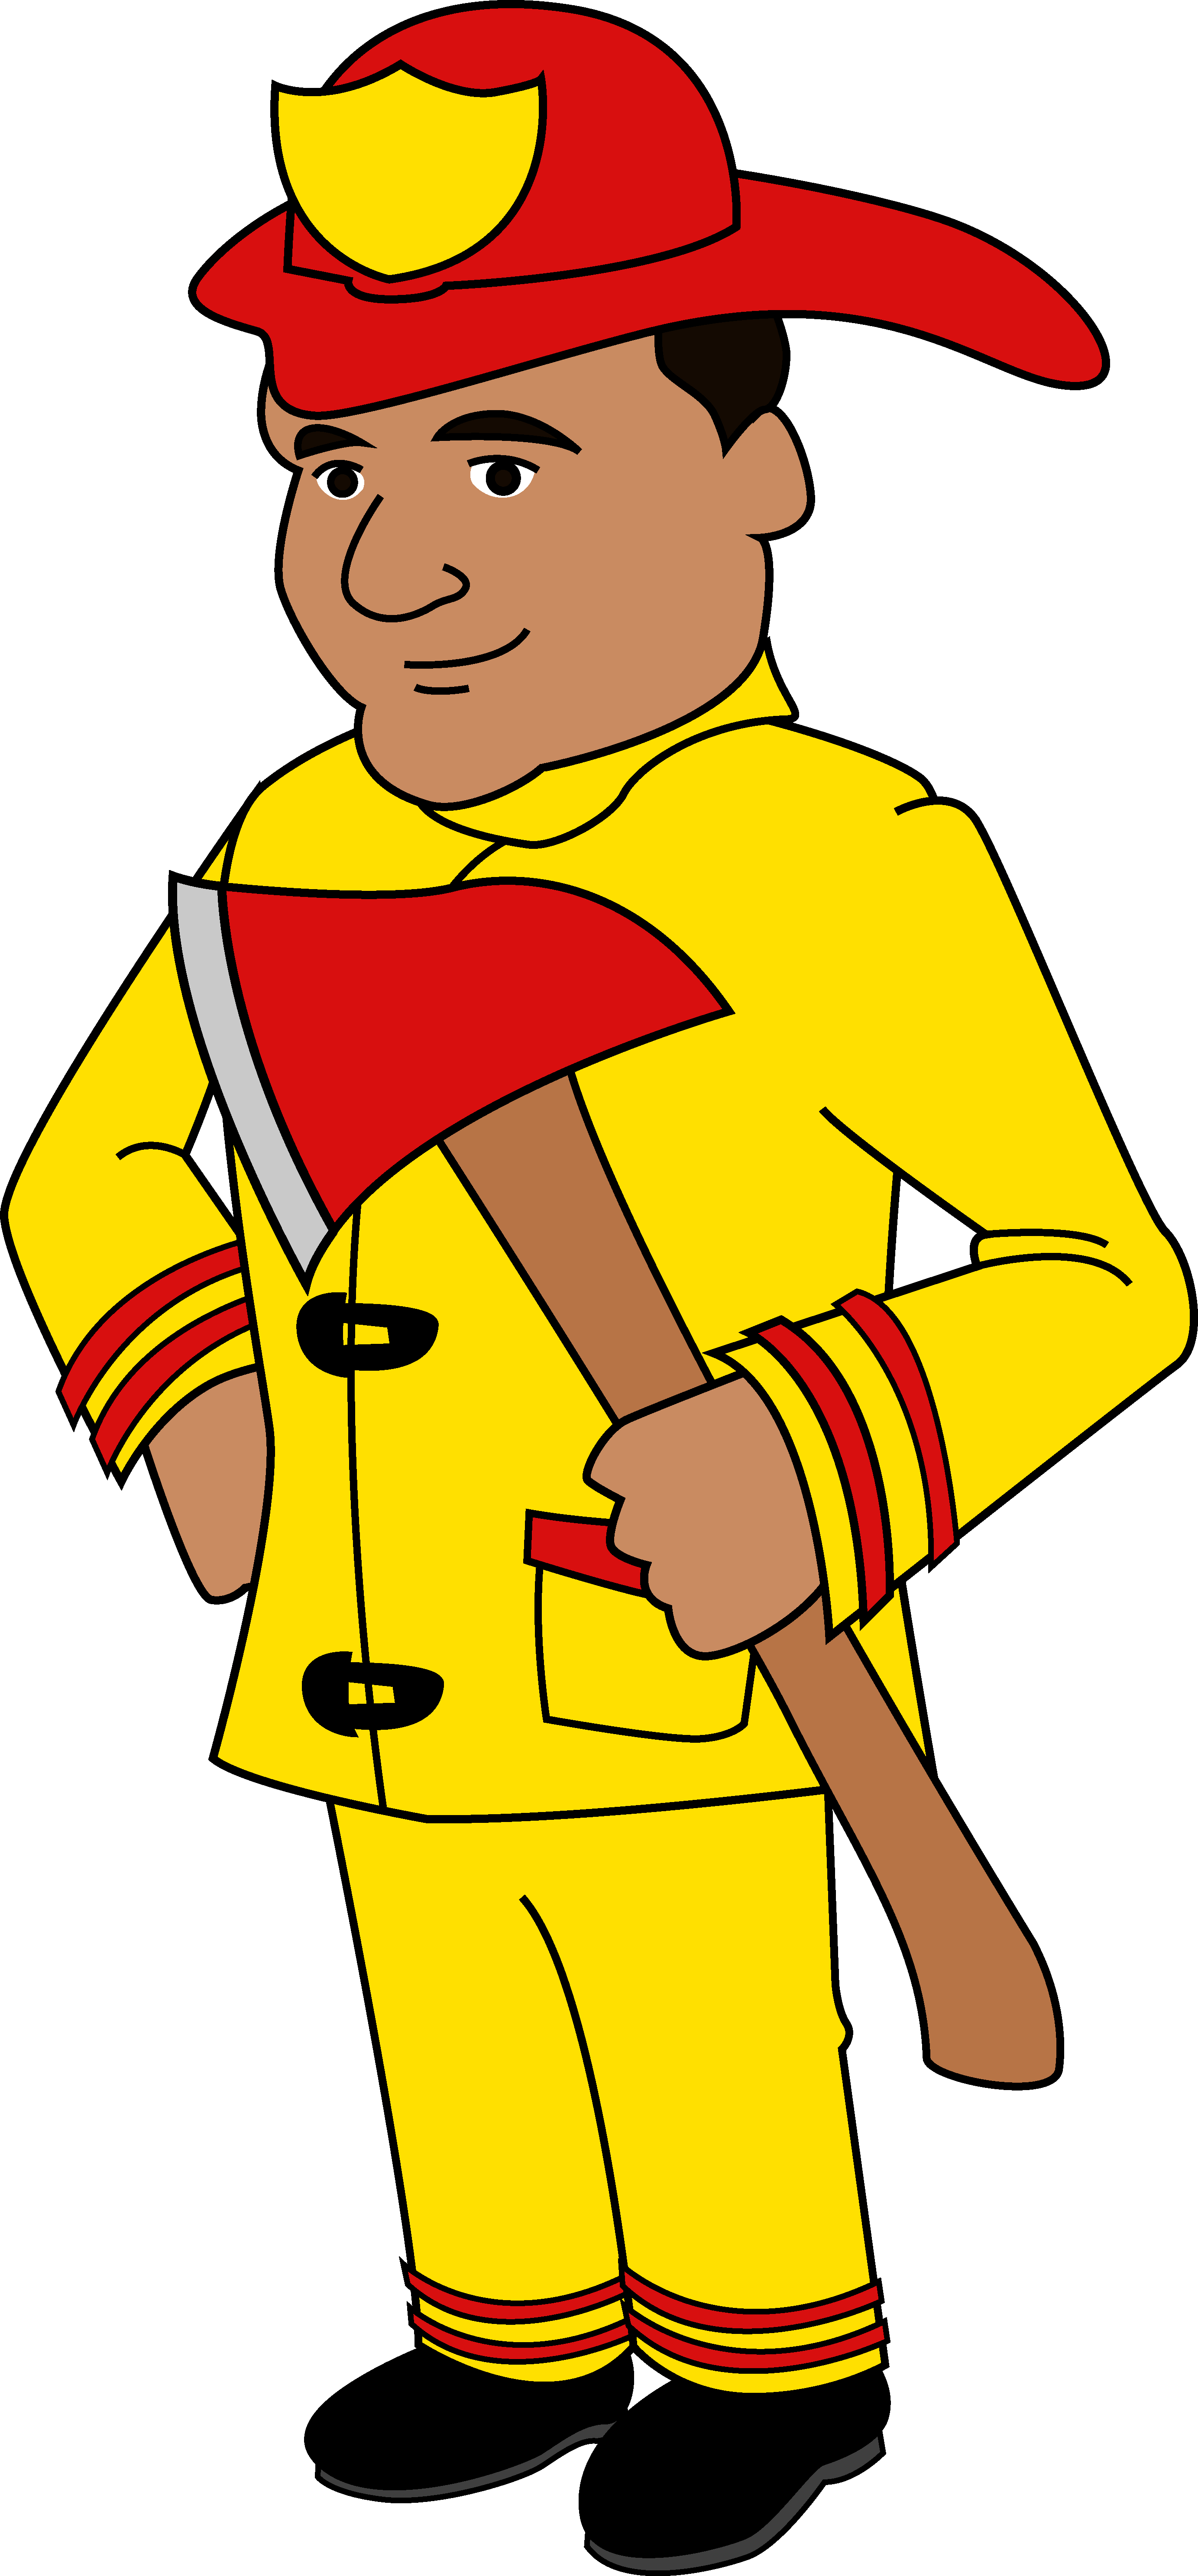 Cartoon Of A Firefighter Holding An Axe